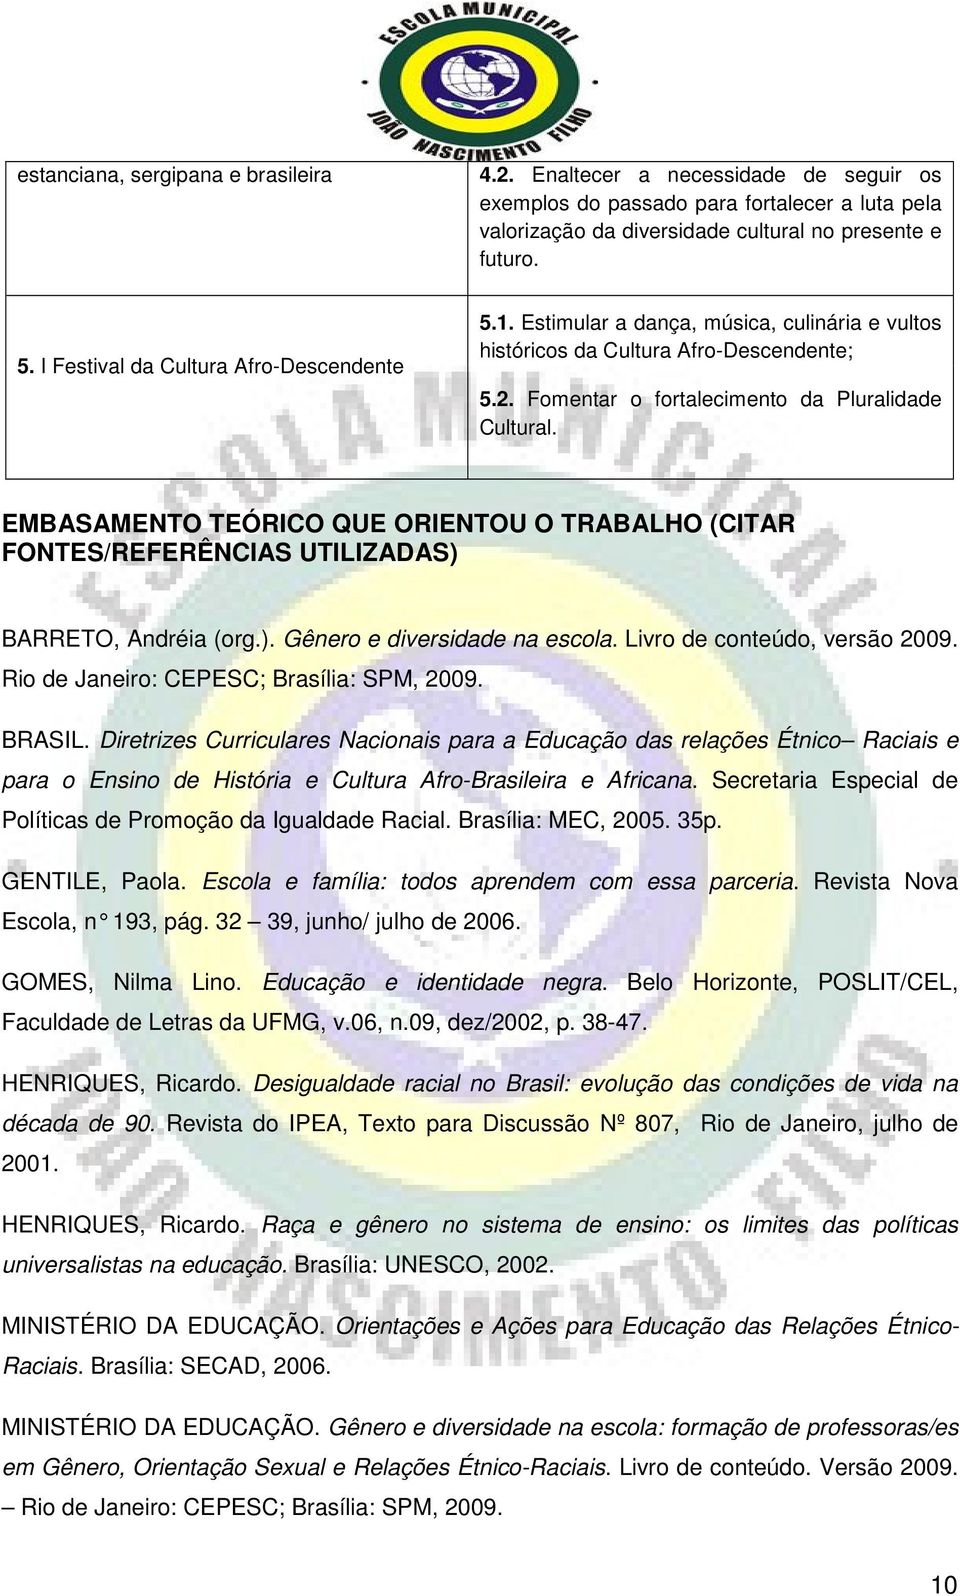 EMBASAMENTO TEÓRICO QUE ORIENTOU O TRABALHO (CITAR FONTES/REFERÊNCIAS UTILIZADAS) BARRETO, Andréia (org.). Gênero e diversidade na escola. Livro de conteúdo, versão 2009.